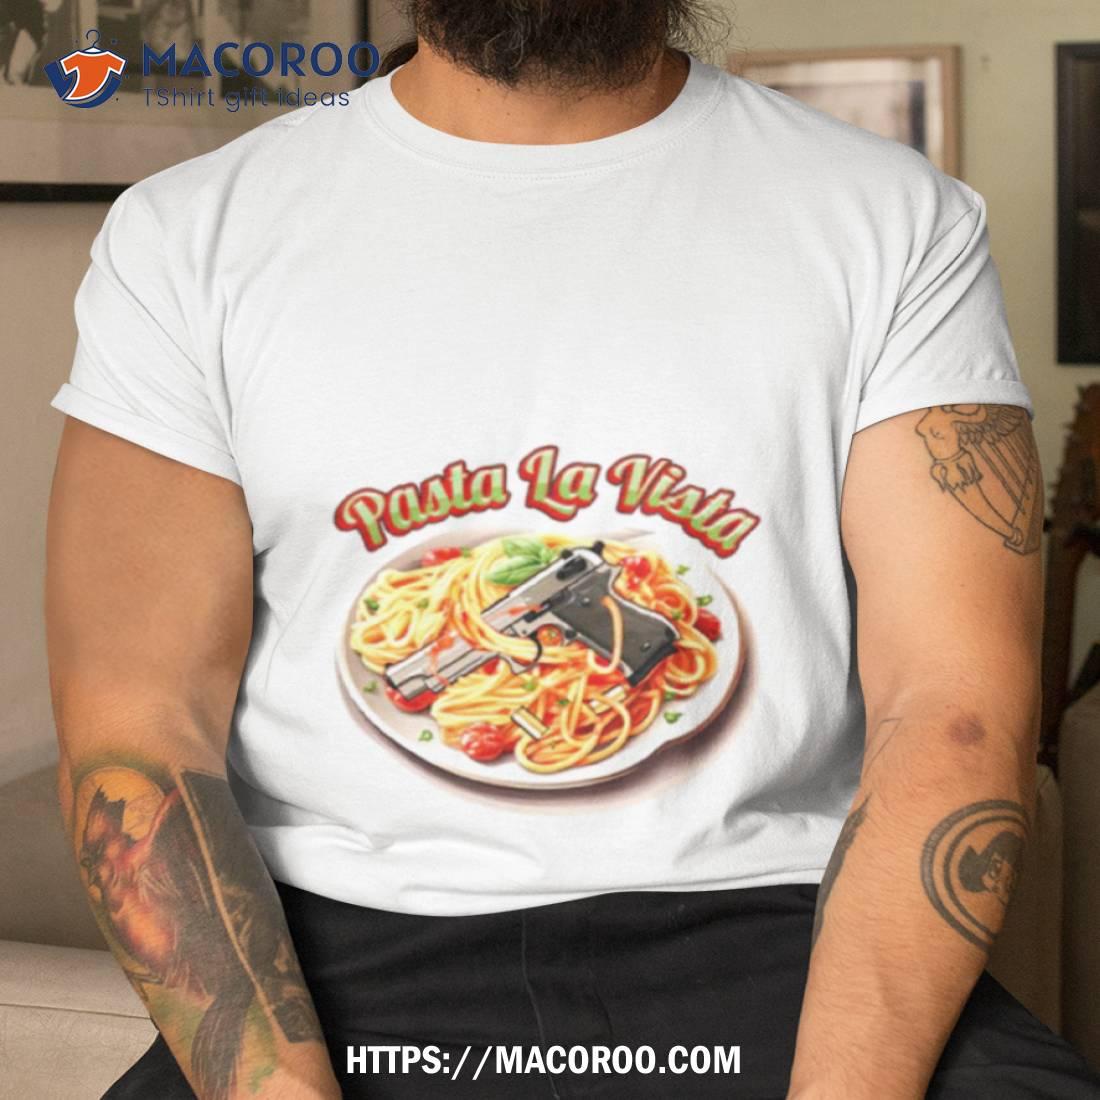 https://images.macoroo.com/wp-content/uploads/2023/09/pasta-la-vista-gun-shirt-tshirt.jpg